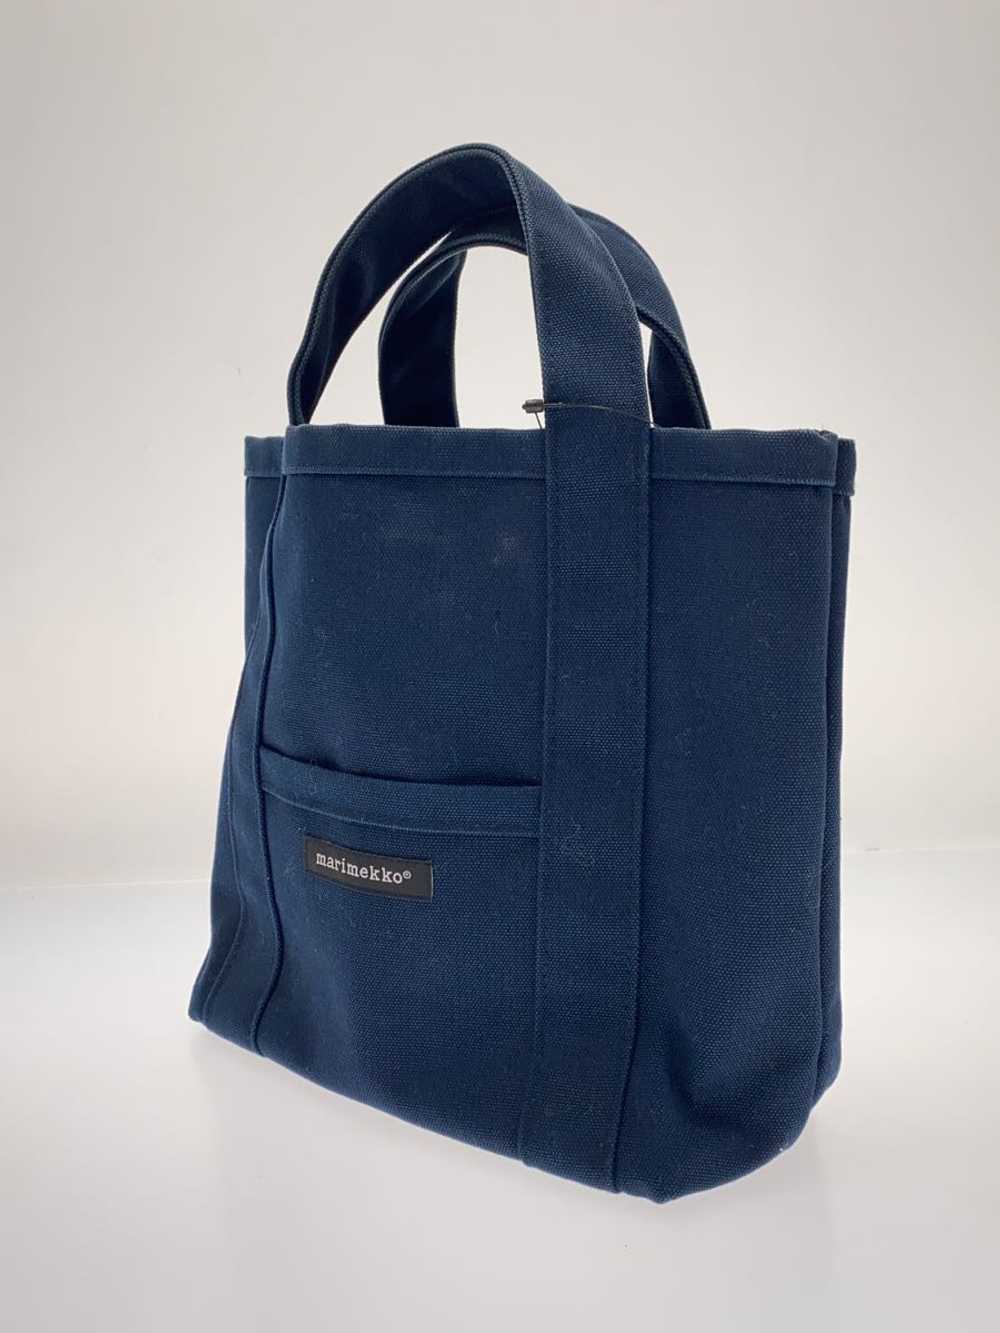 Marimekko Mini Tote Bag/Canvas/Nvy/Plain Bag - image 2